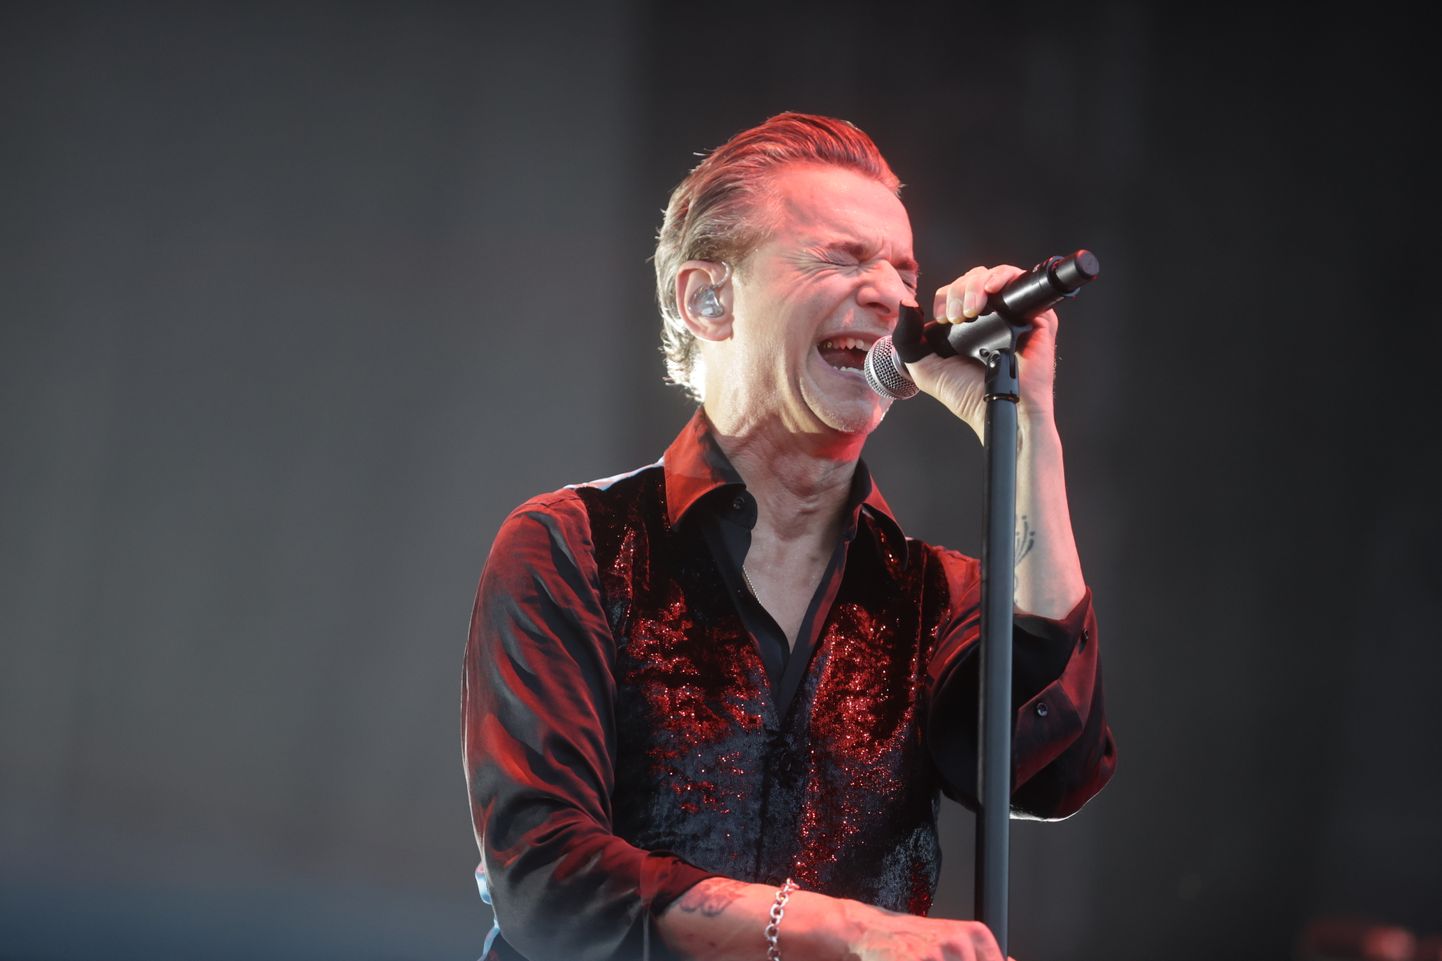 Depeche Mode'i kontsert, 6. augustil Tallinna Lauluväljakul